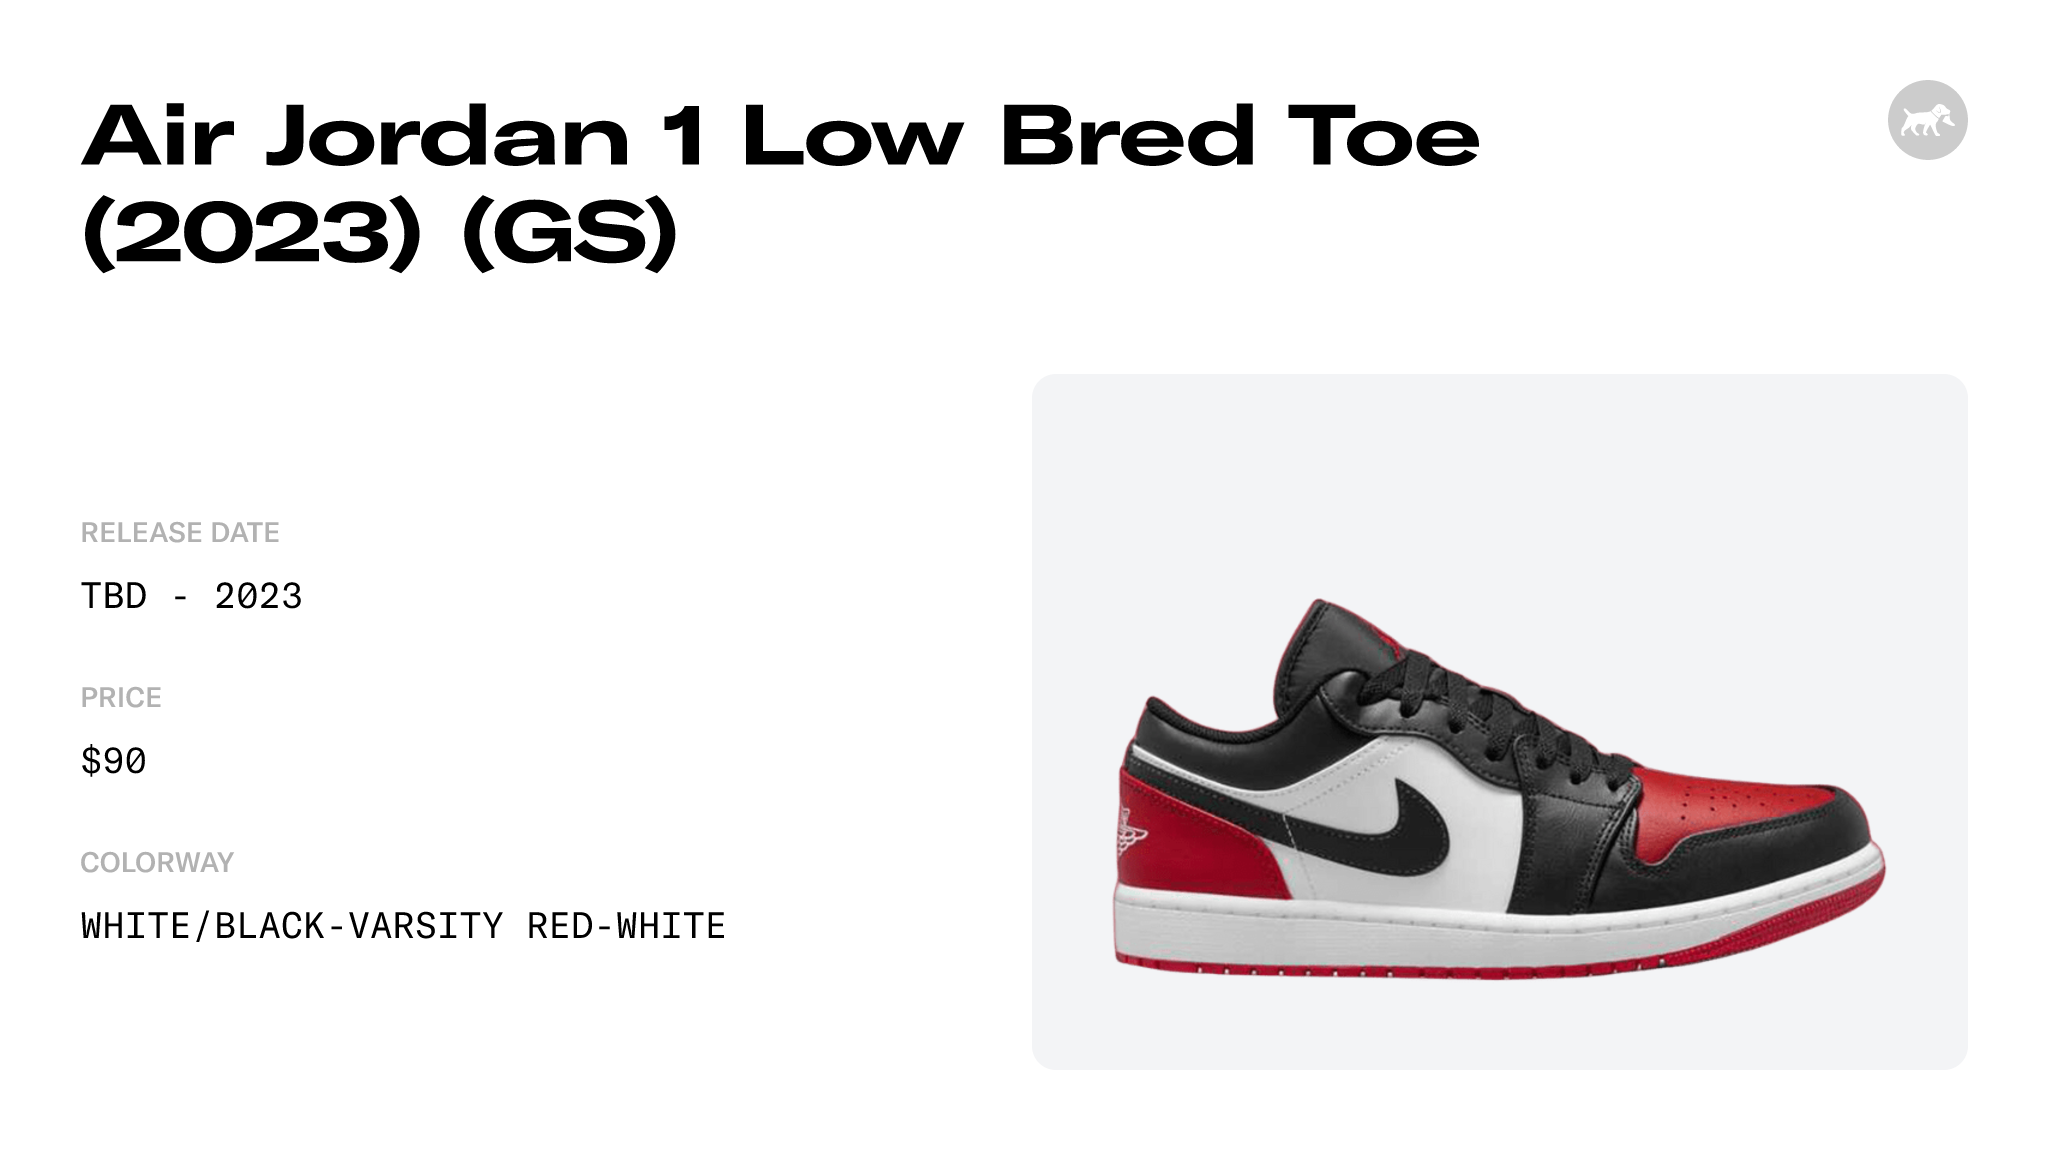 Air Jordan 1 Low Bred Toe (2023) (GS) - 553560-161 Raffles and Release Date